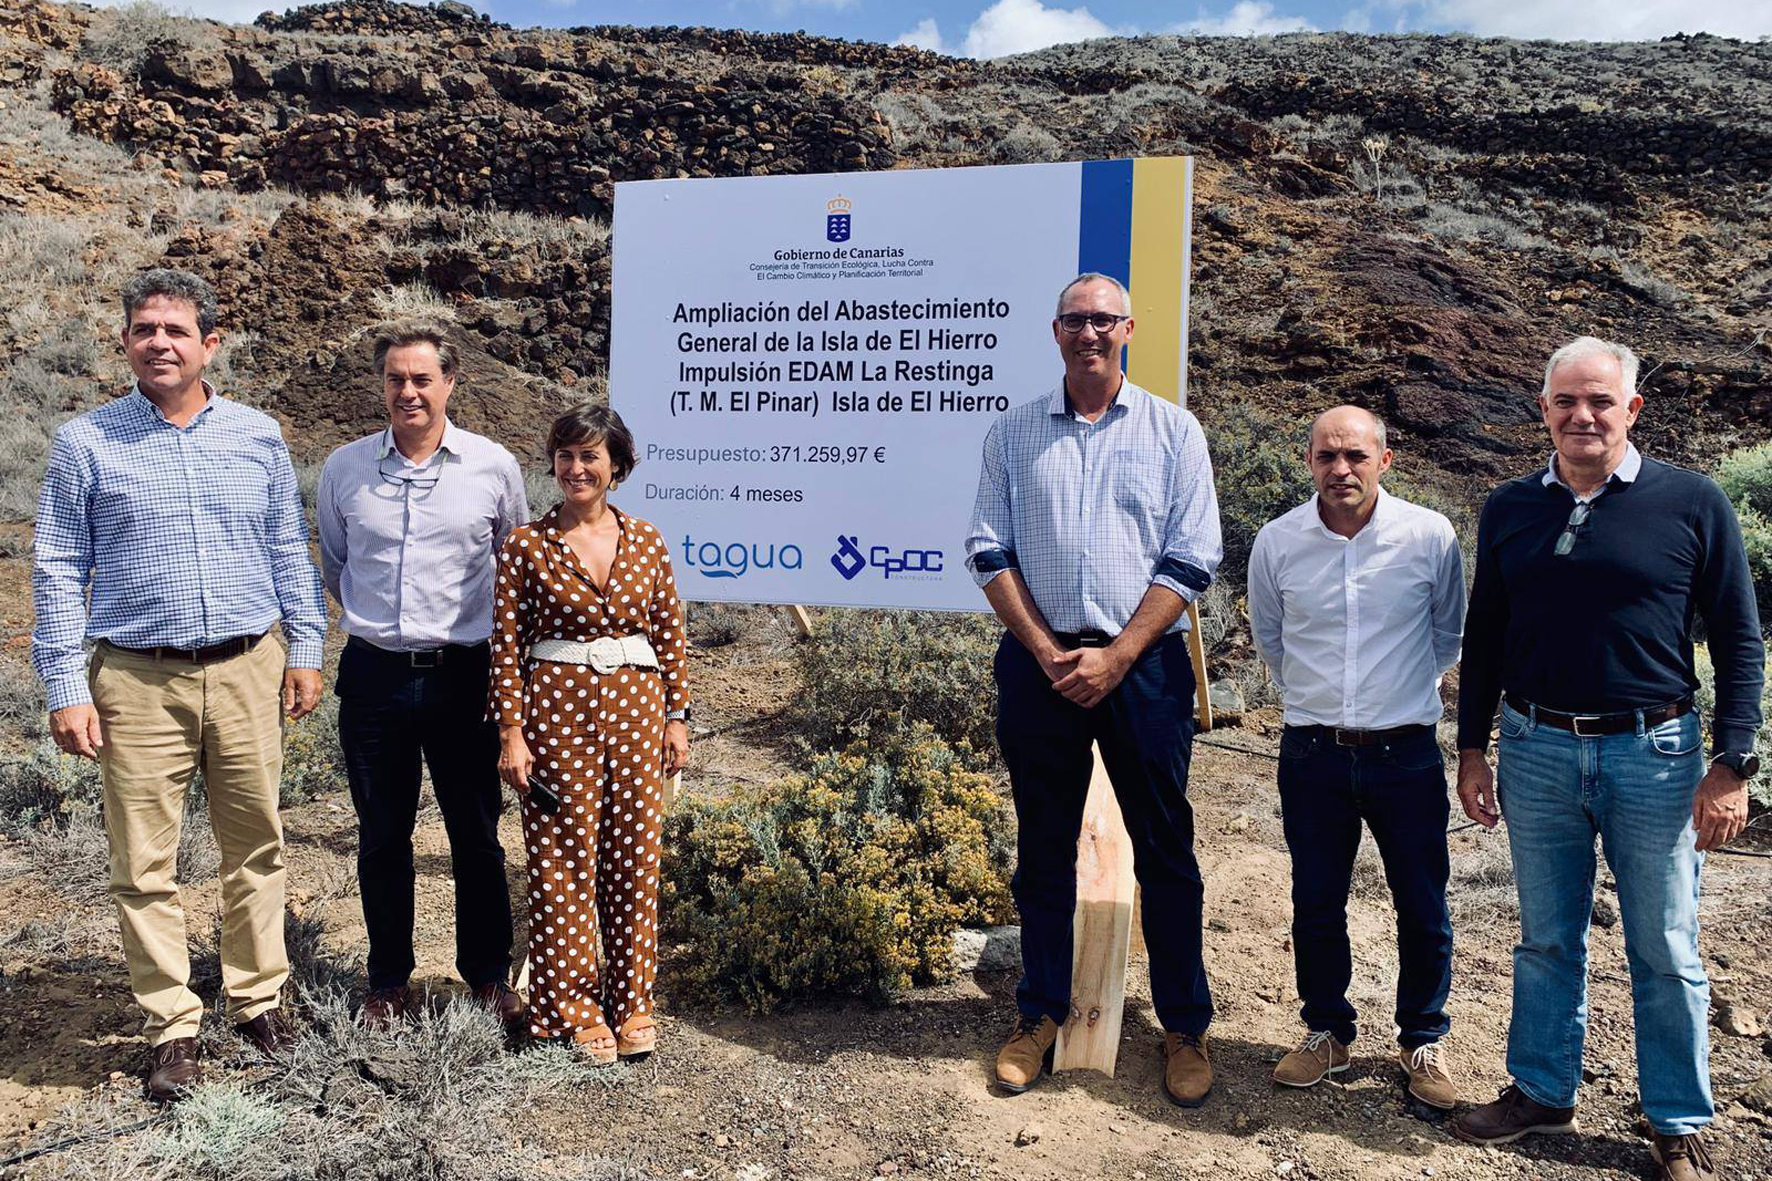 El Gobierno de Canarias invierte 371.259 euros en la ampliación de capacidad de impulsión de la desaladora de La Restinga